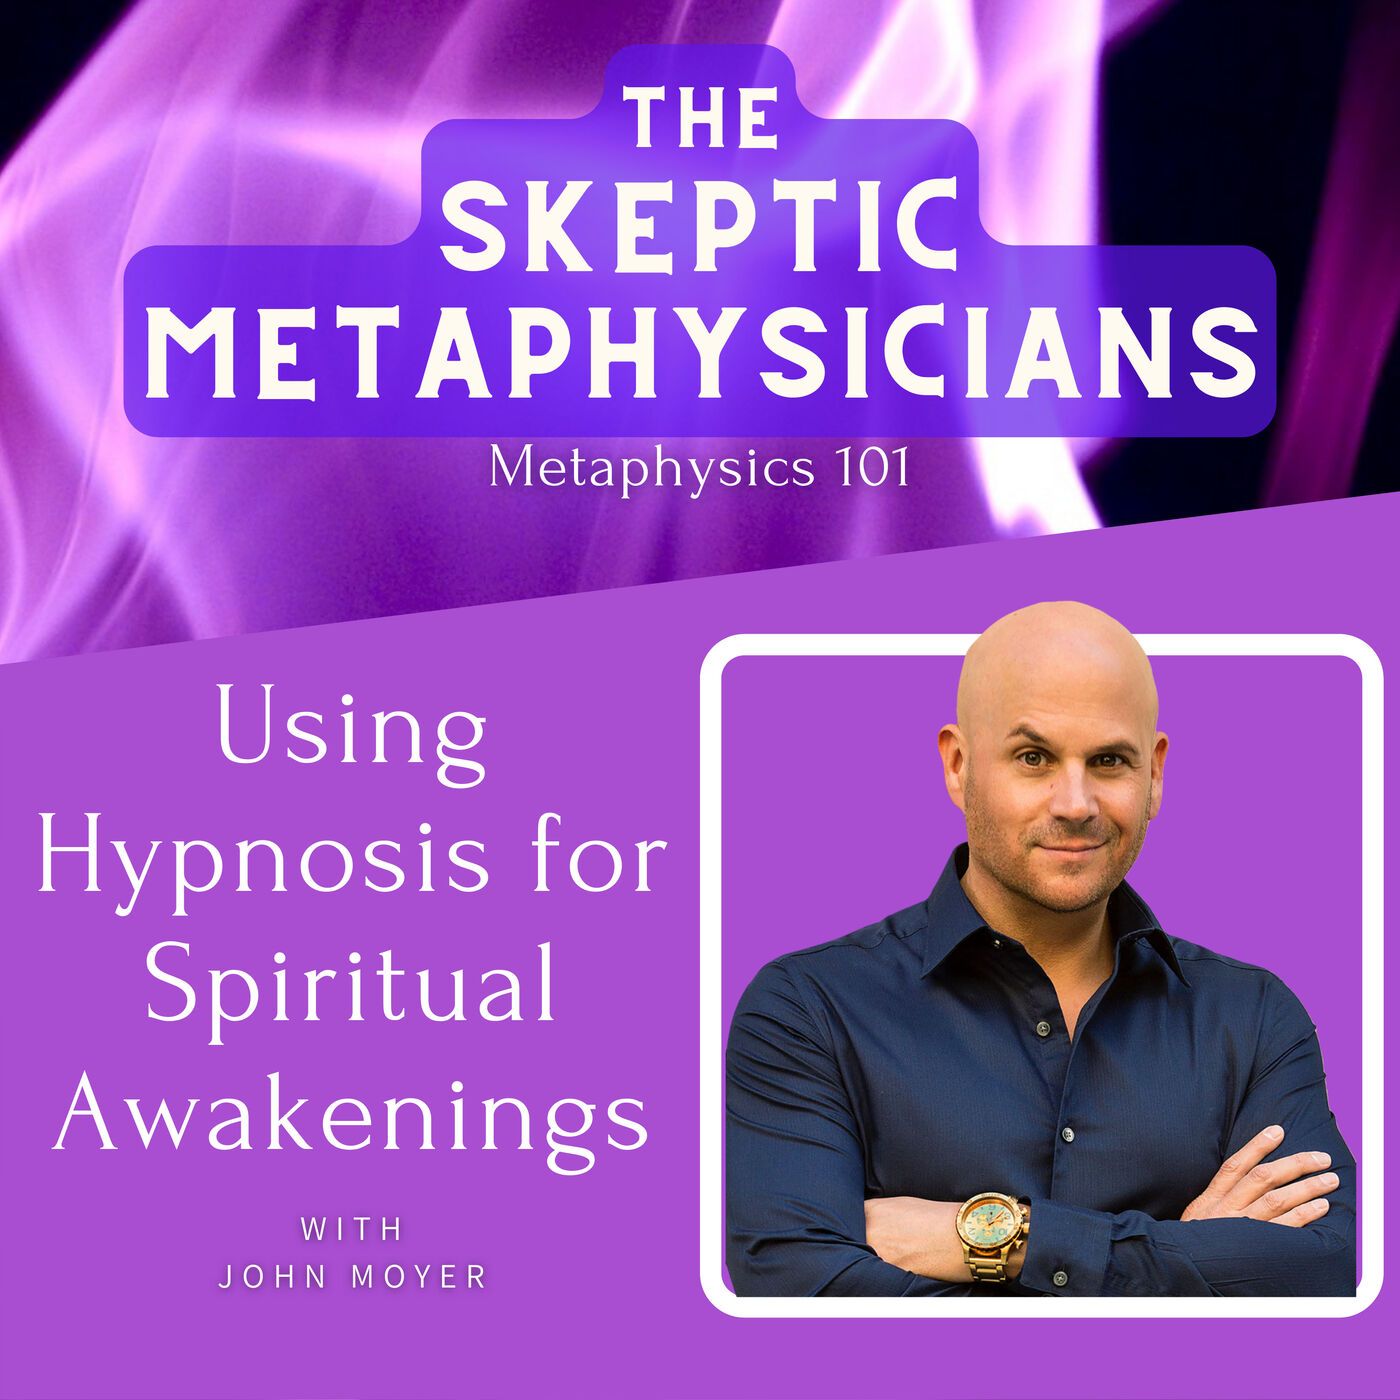 Using Hypnosis for Spiritual Awakenings | John Moyer Image